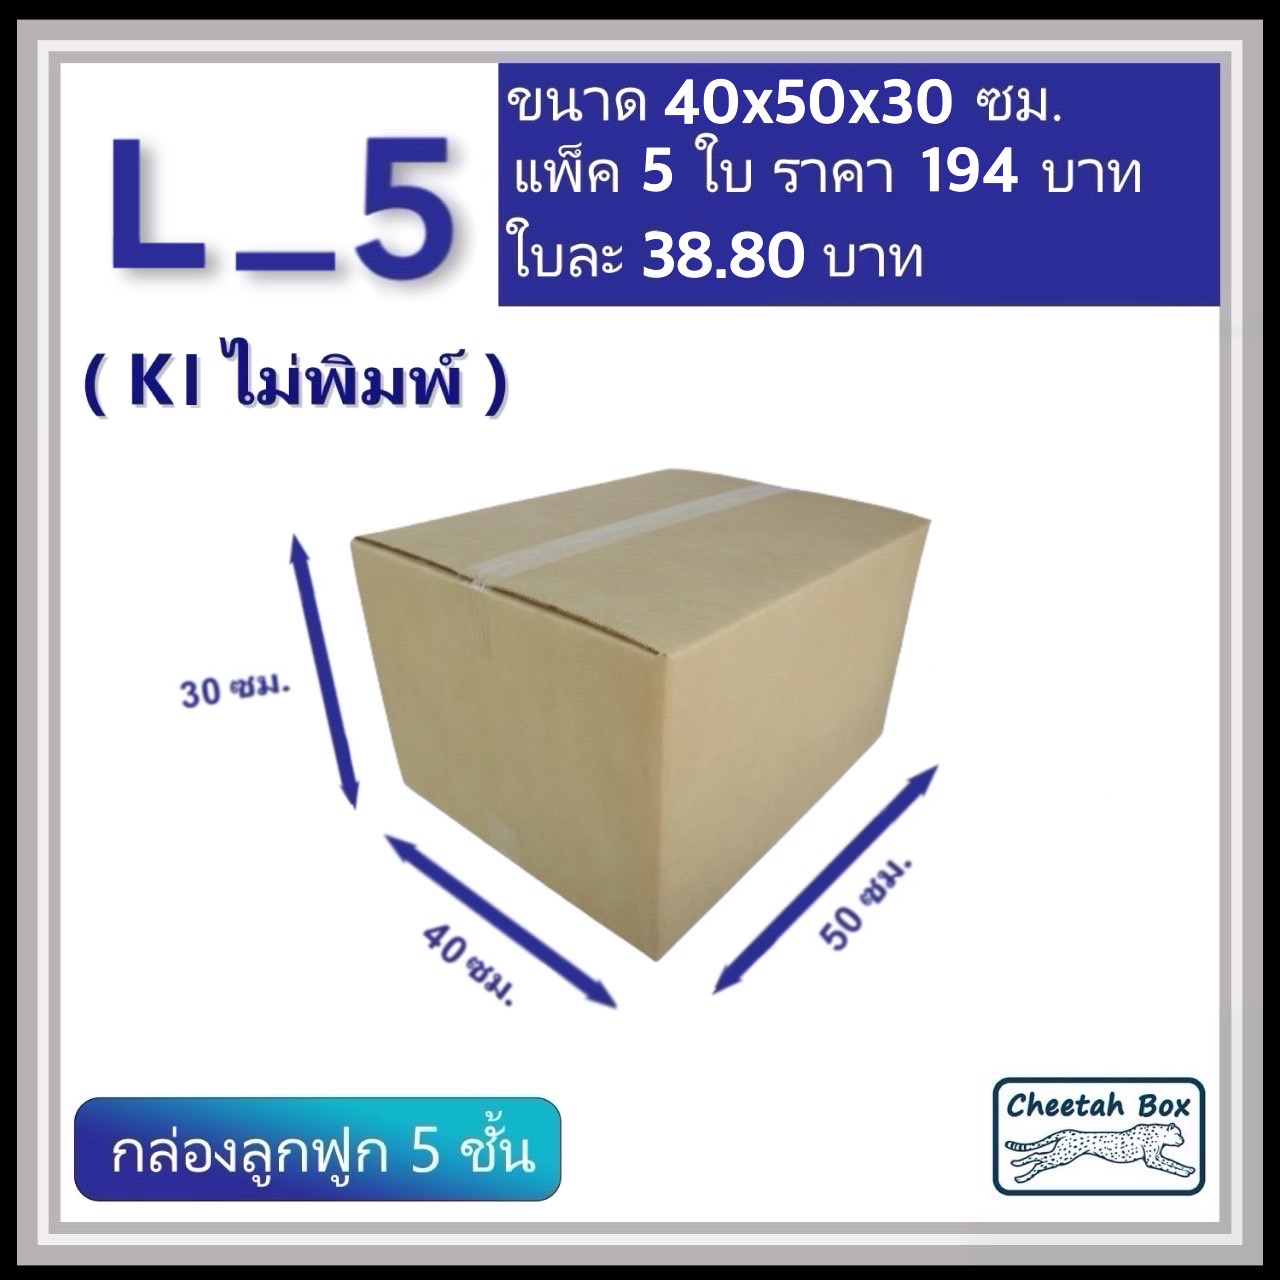 กล่องพัสดุ 5 ชั้น รหัส L_5 (Kerry) ไม่พิมพ์ (Cheetah Box) 40W x 50L x 30H cm. OD